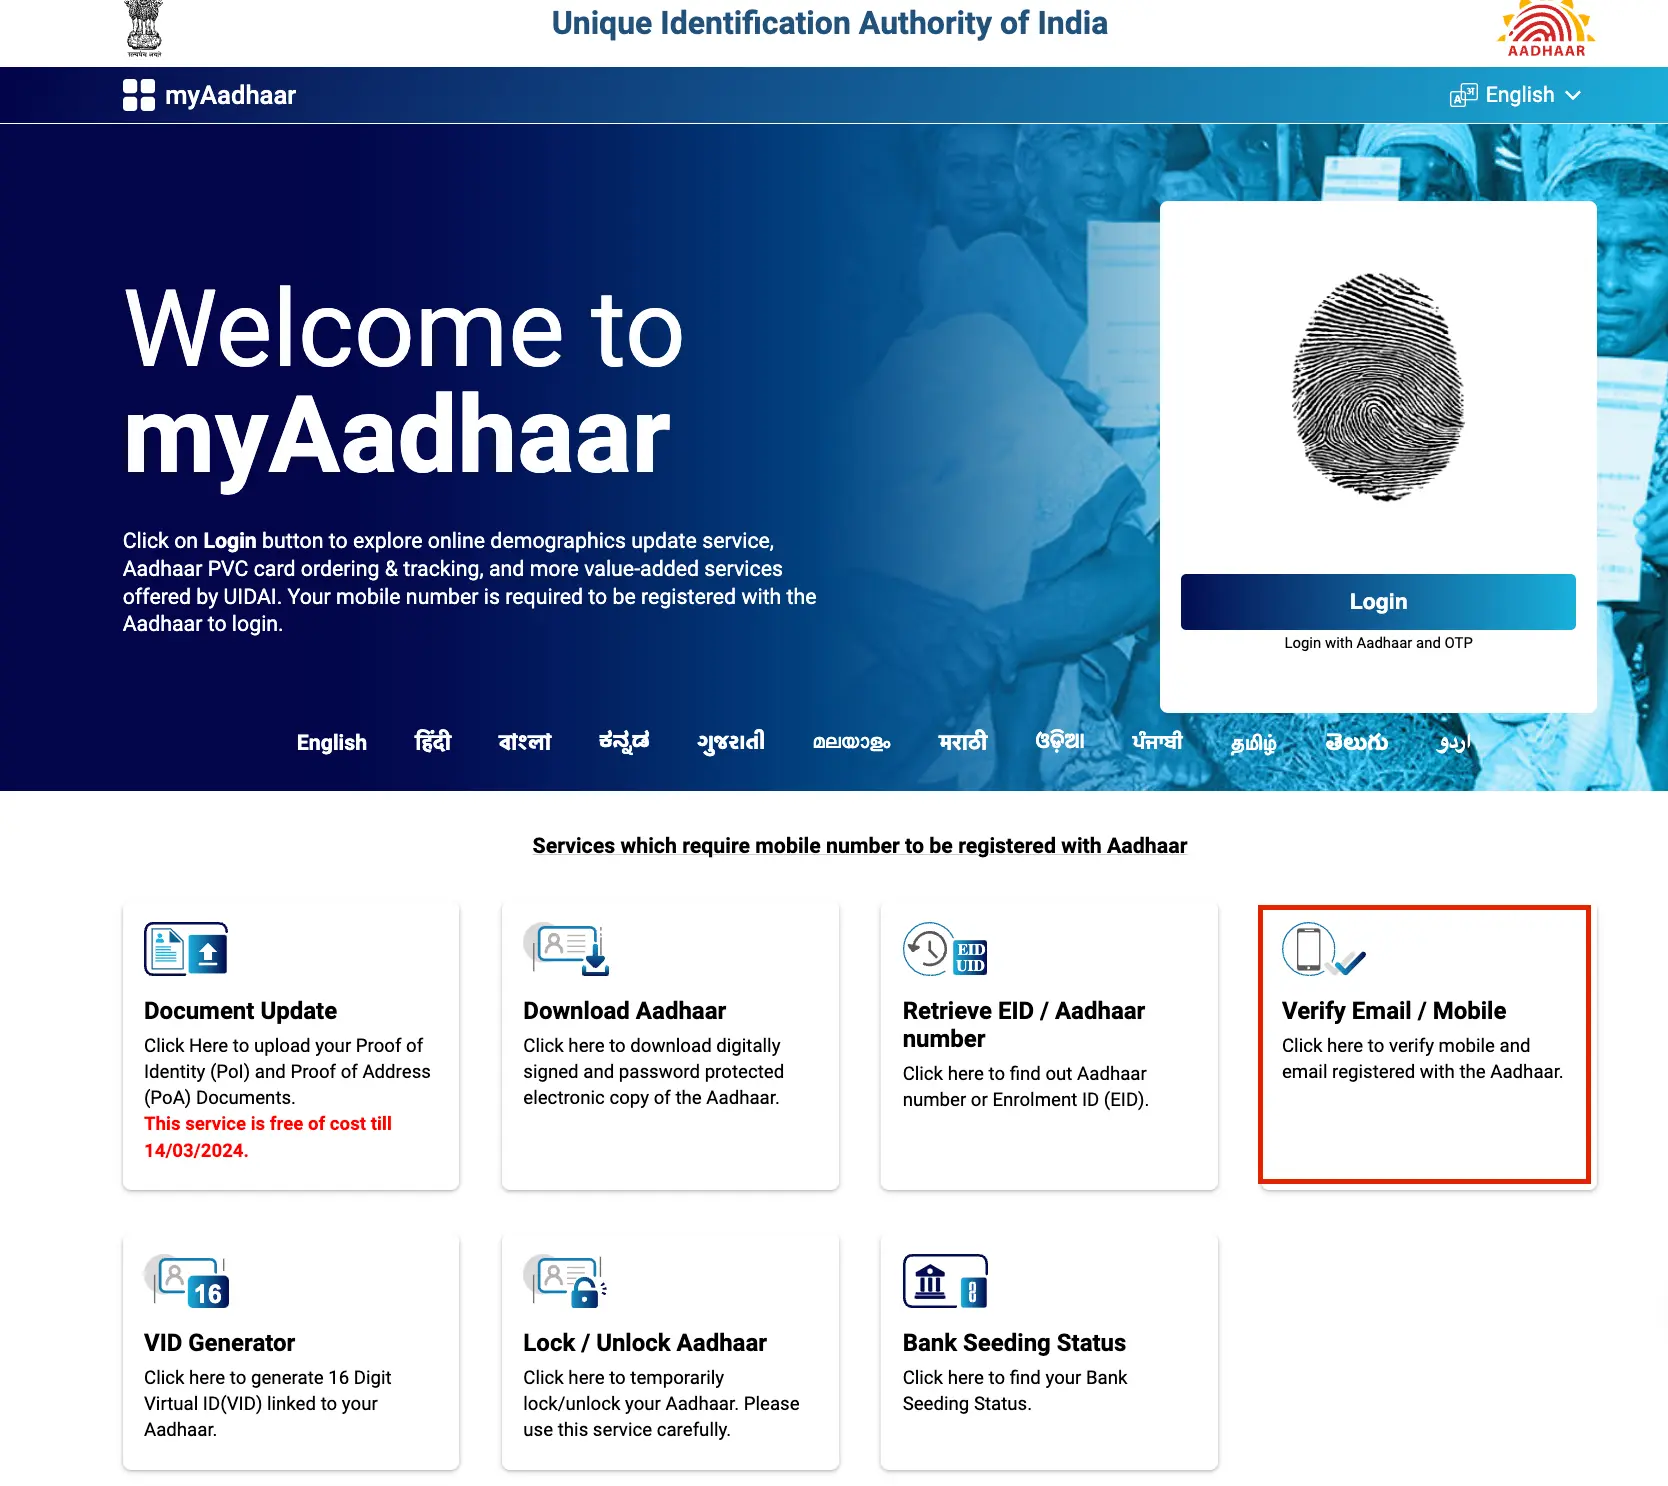 Verify Mobile Number Linked to Aadhaar